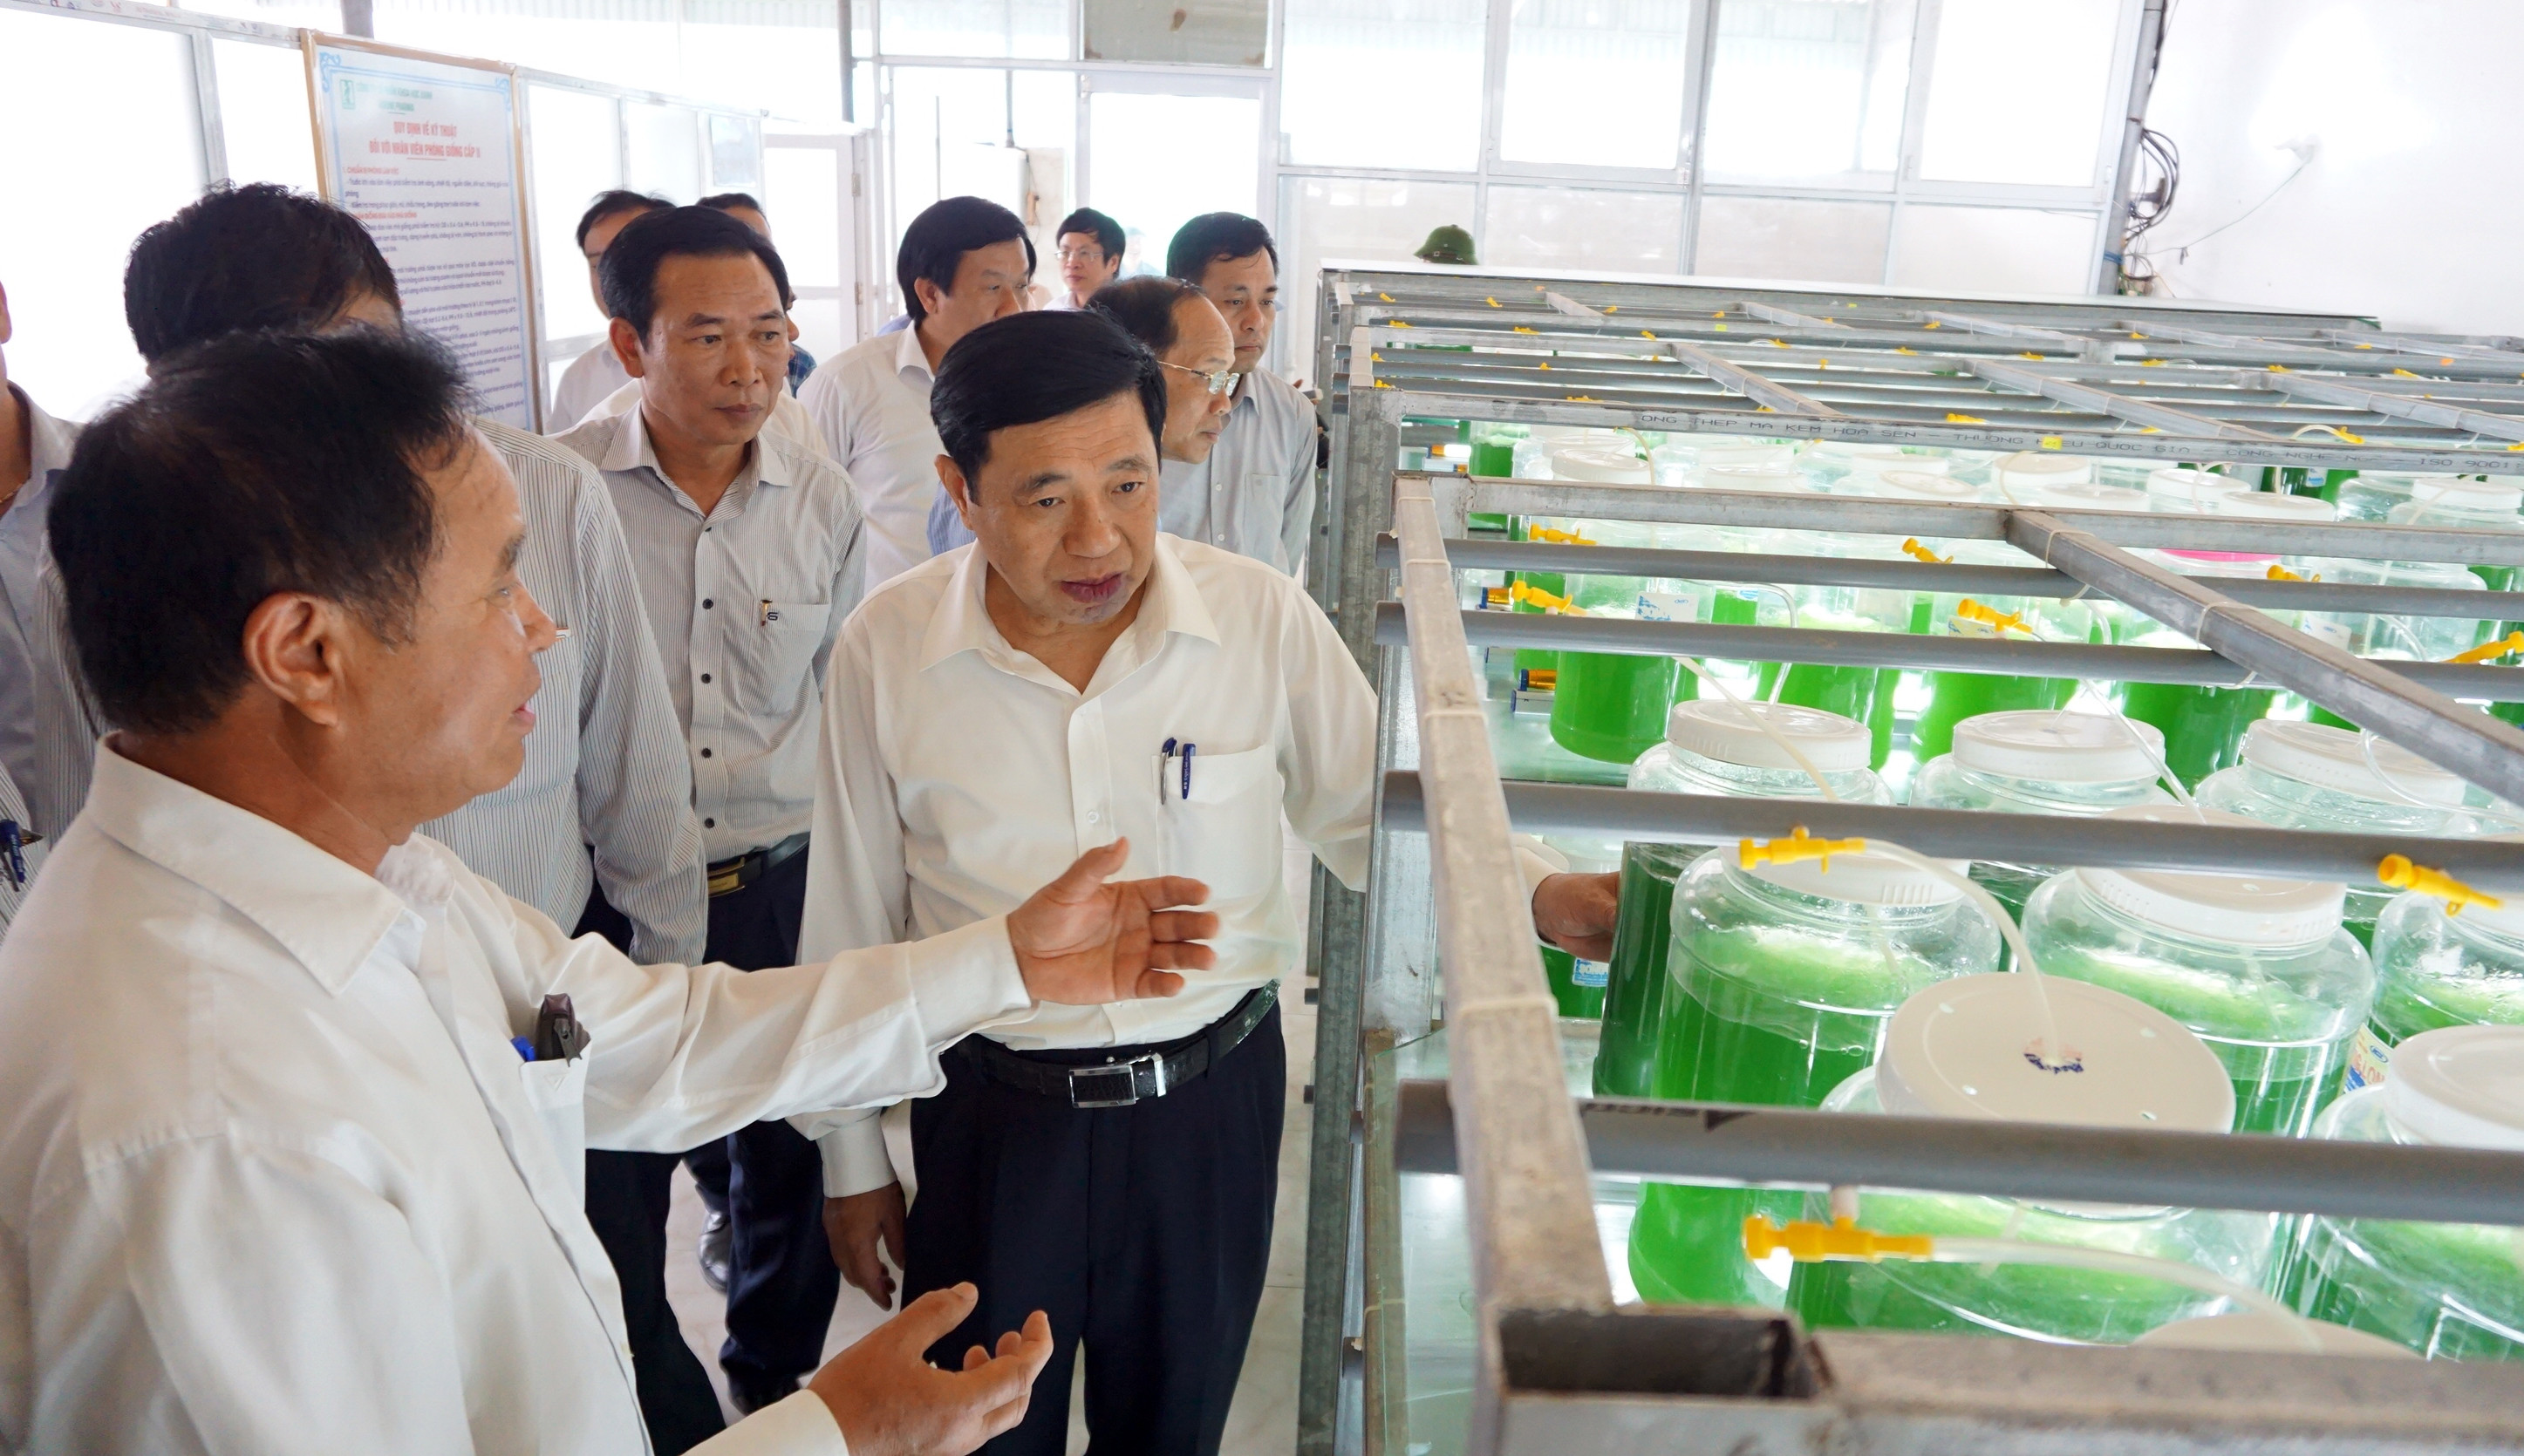 Đoàn công tác cũng đến thăm Công ty sản xuất tảo xoắn và đông trùng hạ thảo tại Quỳnh Lương. Đây là công ty đầu tiên ở Nghệ An sản xuất được tảo xoắn và đông trùng hạ thảo – những loại thực phẩm chức năng có chất lượng cao